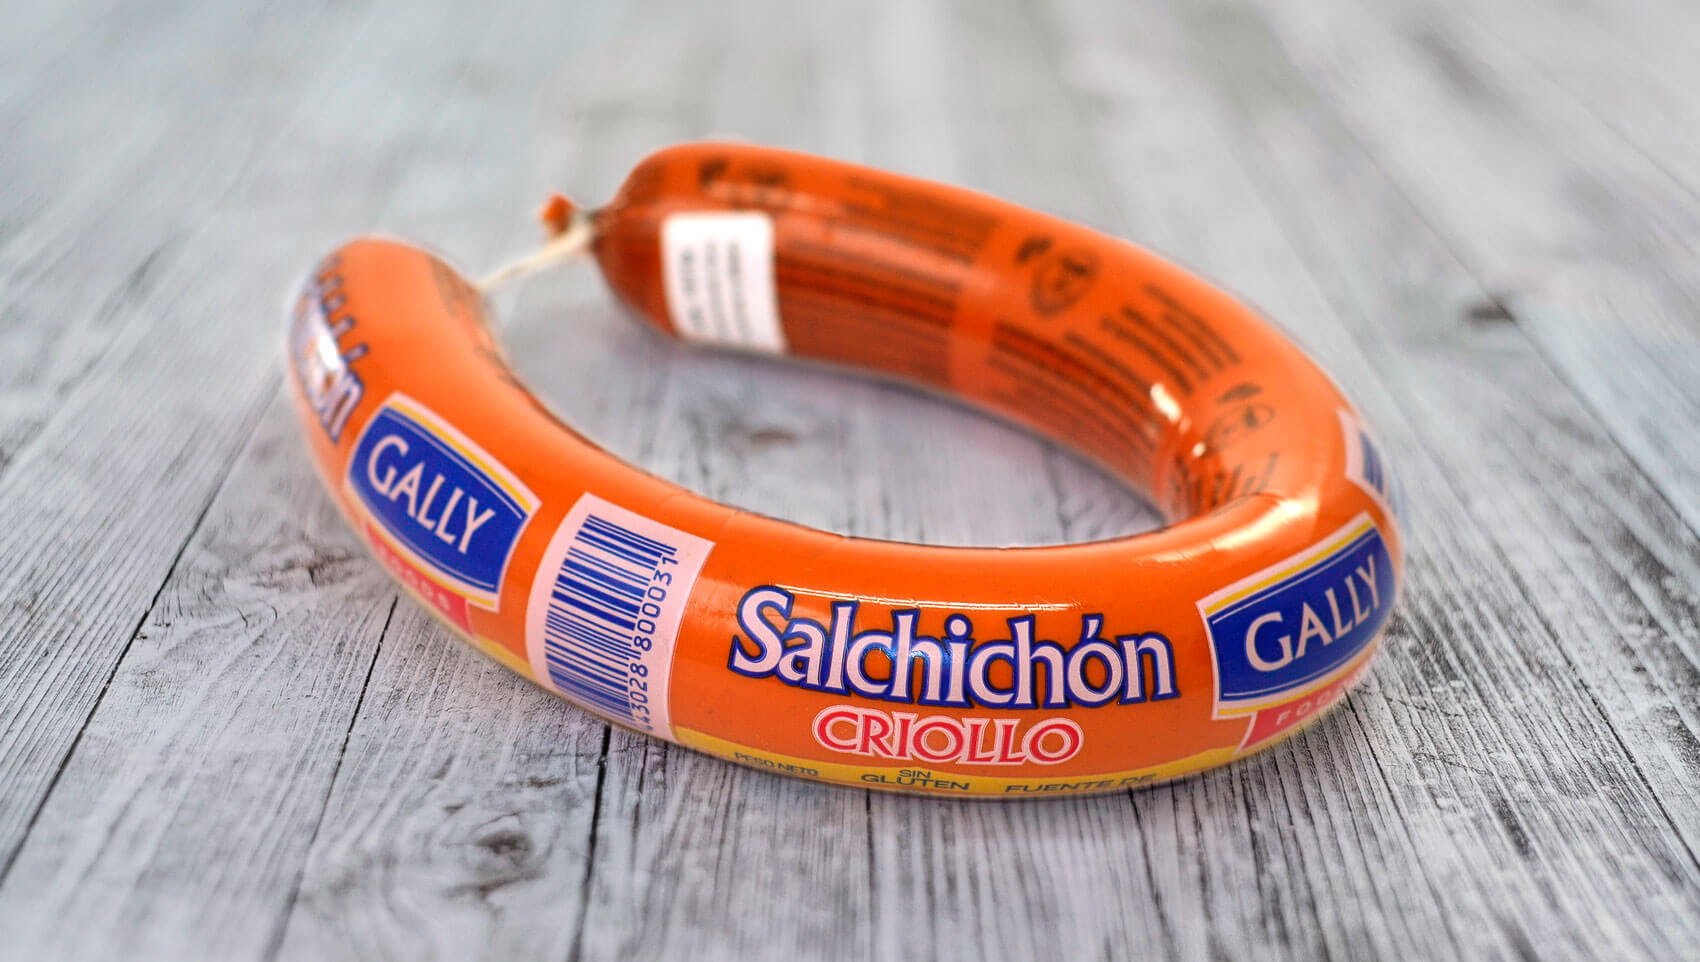 Galeria-Gally-Salchichon-Slider